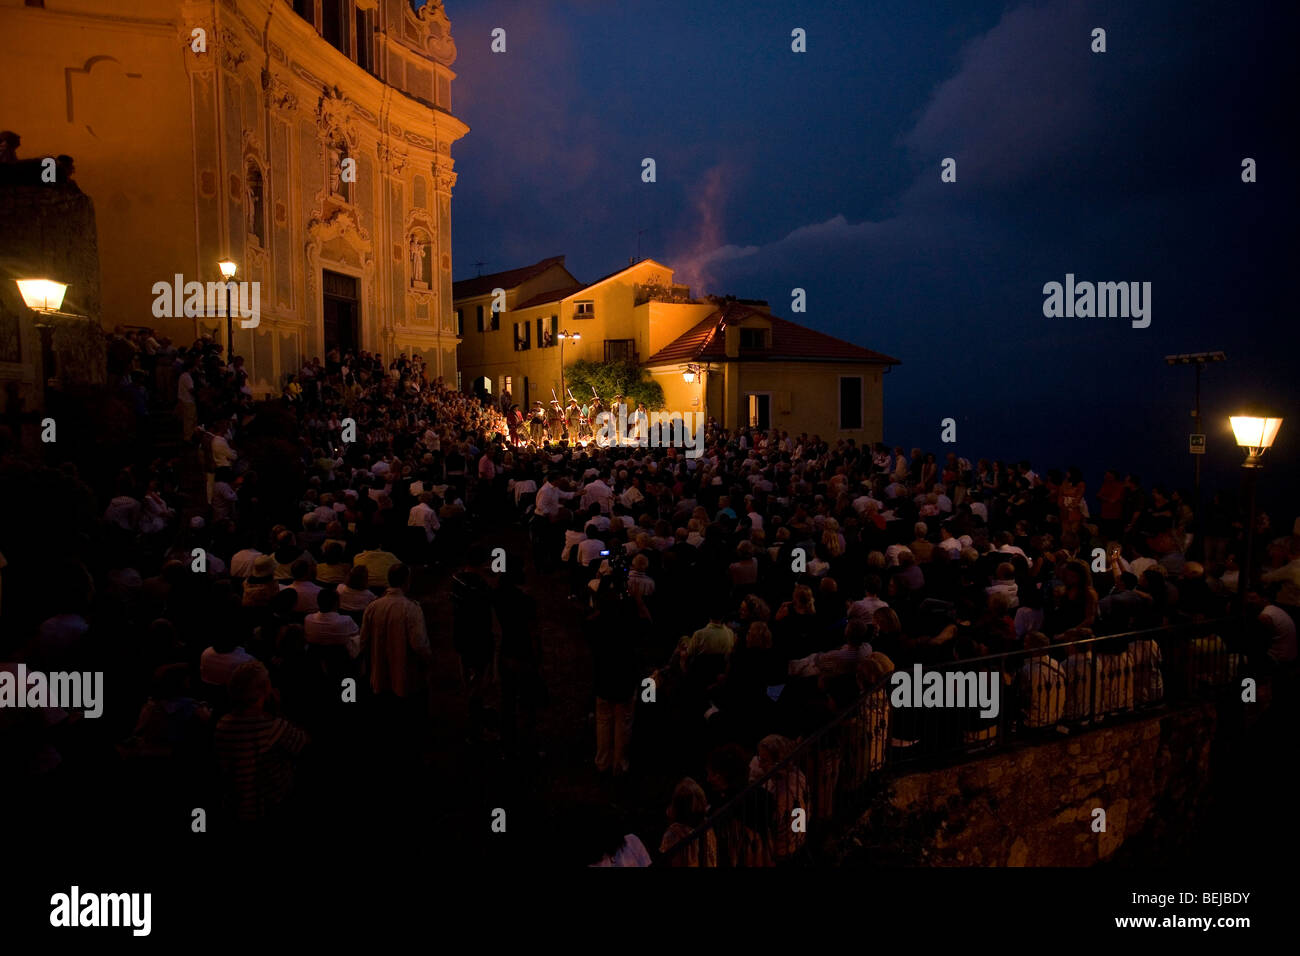 Violinist Uto Ughi in concert, Piazza dei Corallini square, Cervo, Imperia, Ligury, Italy Stock Photo